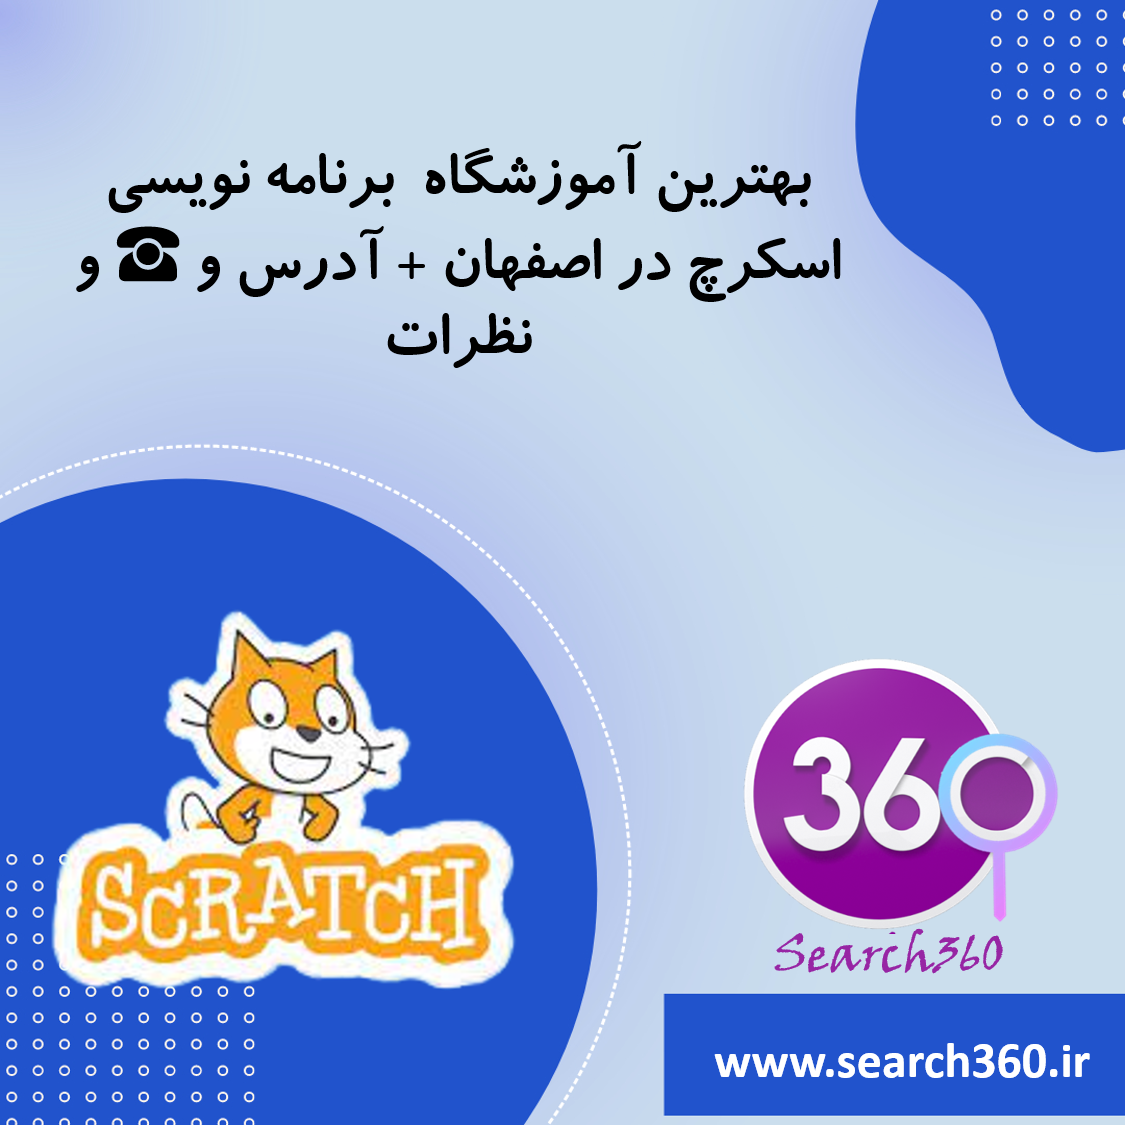 بهترین کلاس برنامه نویسی اسکرچ در اصفهان با آدرس و تلفن ☎️ و نظرات